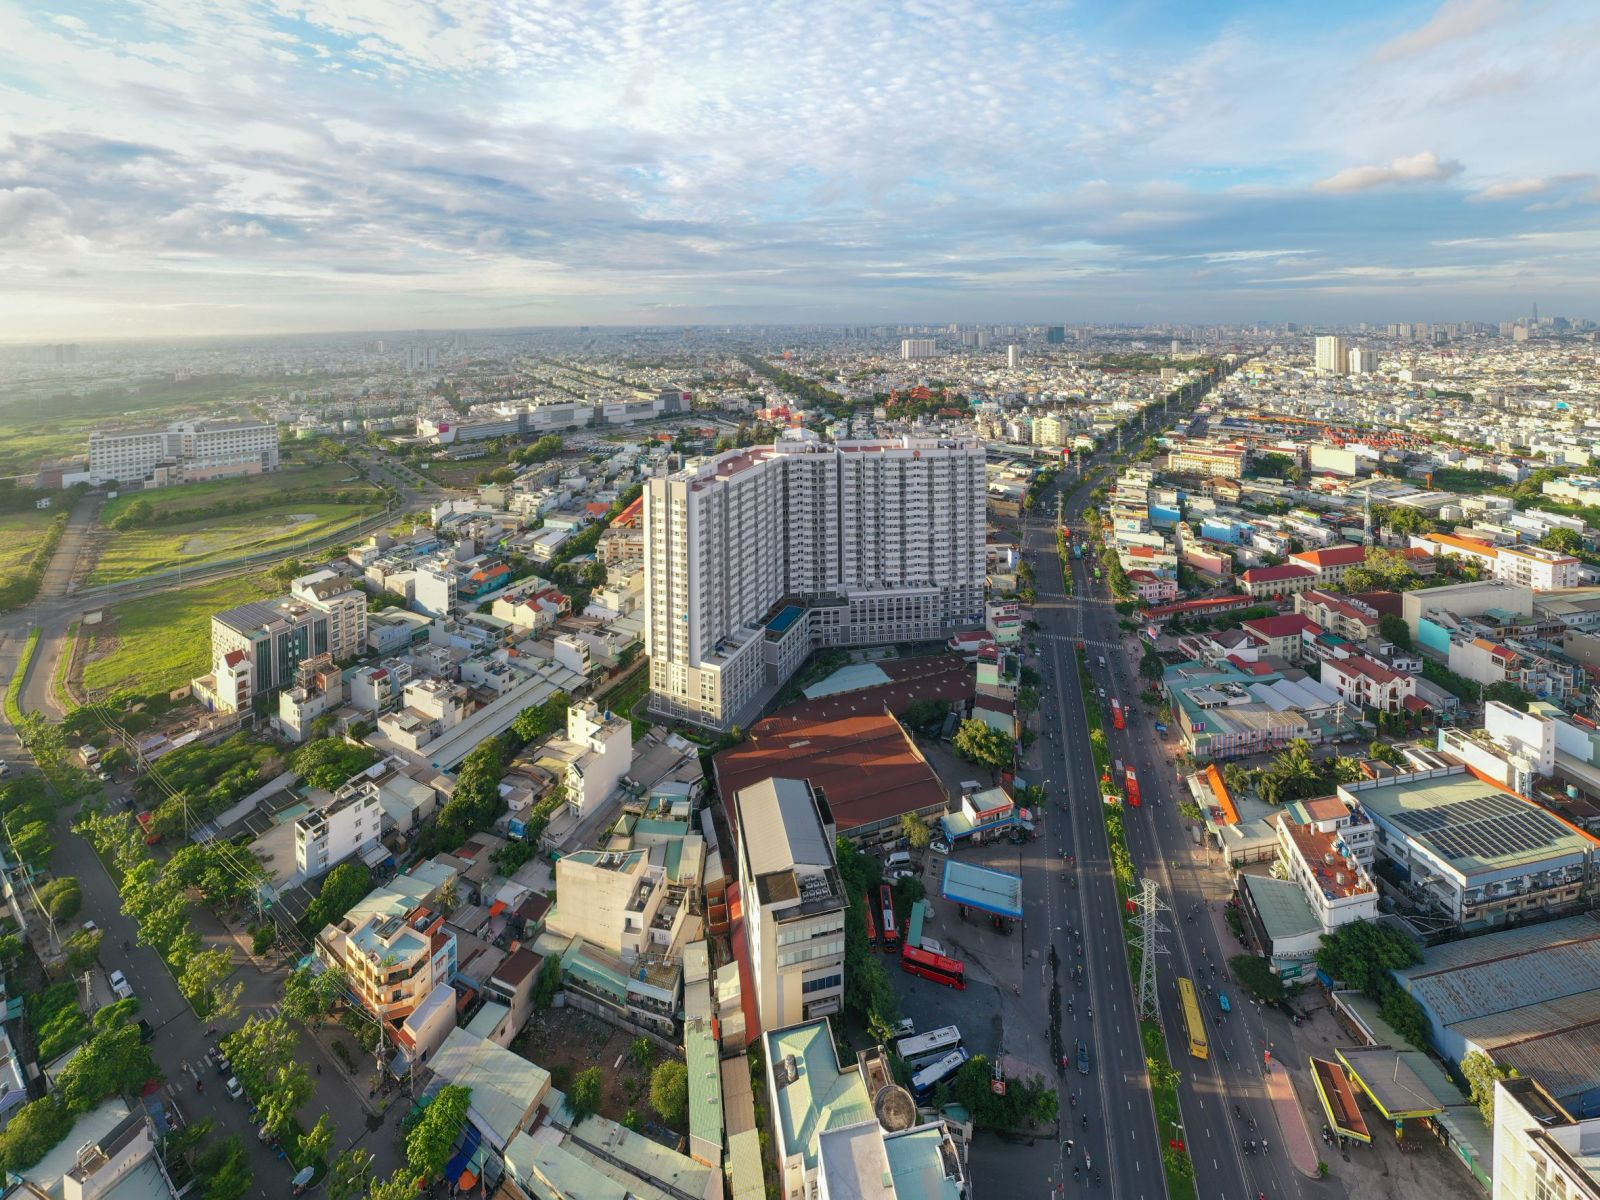 Hạ tầng quận Bình Tân hoàn thiện với nhiều tuyến đường lớn rộng thoáng. Ảnh: Hưng Thịnh Land